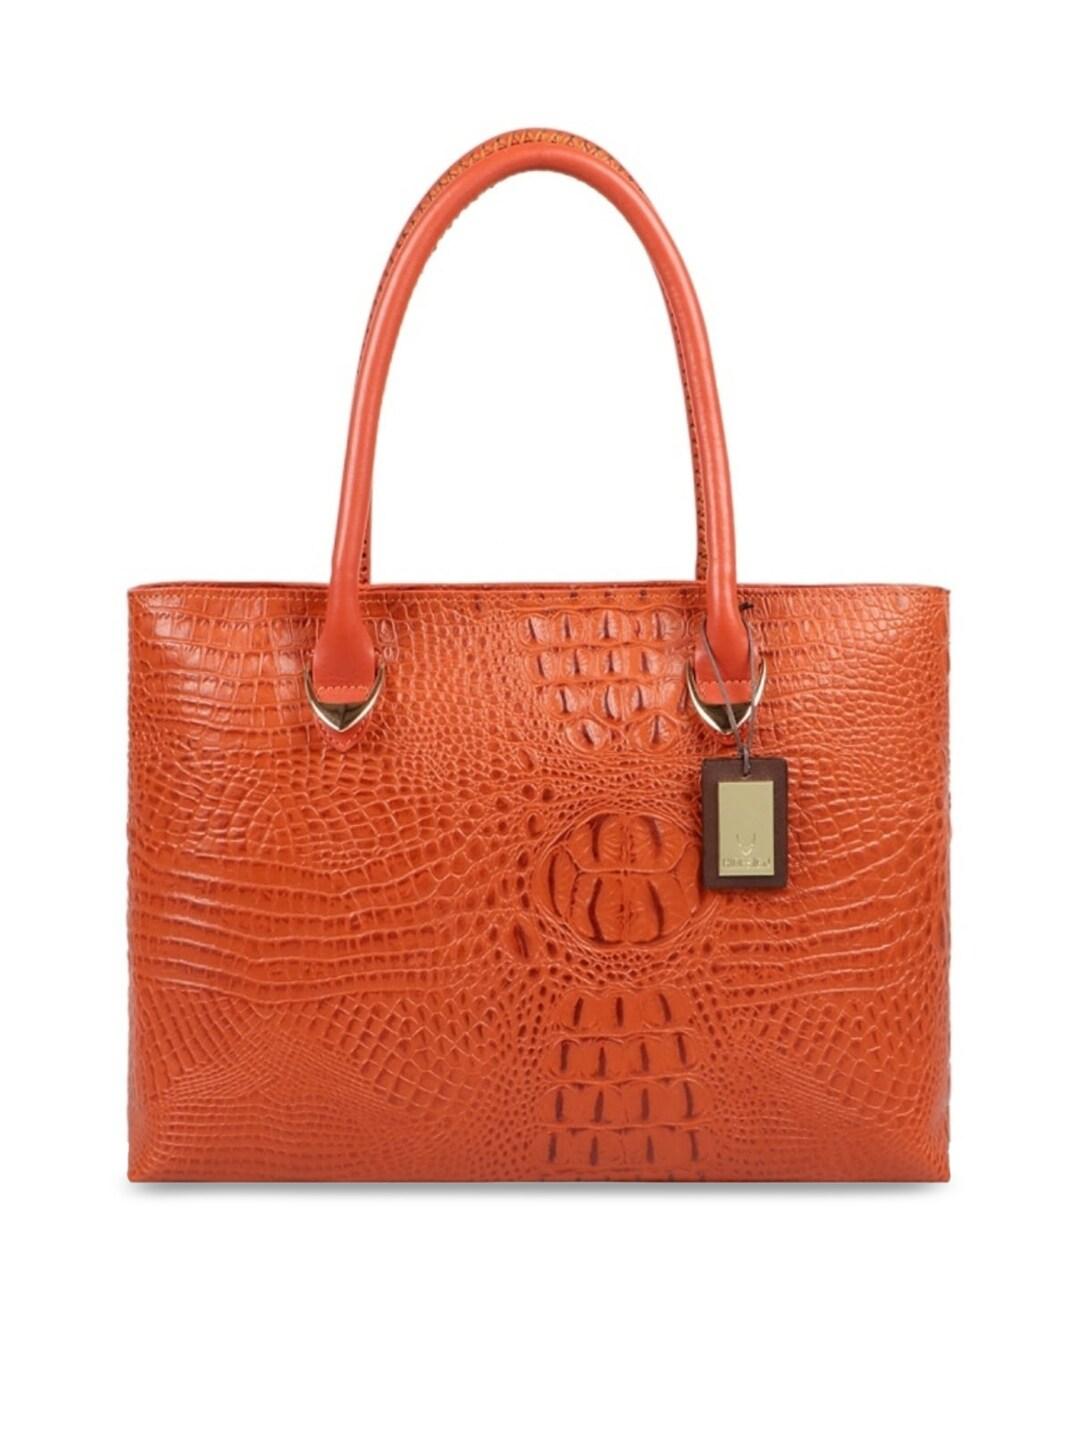 Hidesign Orange Textured Leather Shopper Shoulder Bag